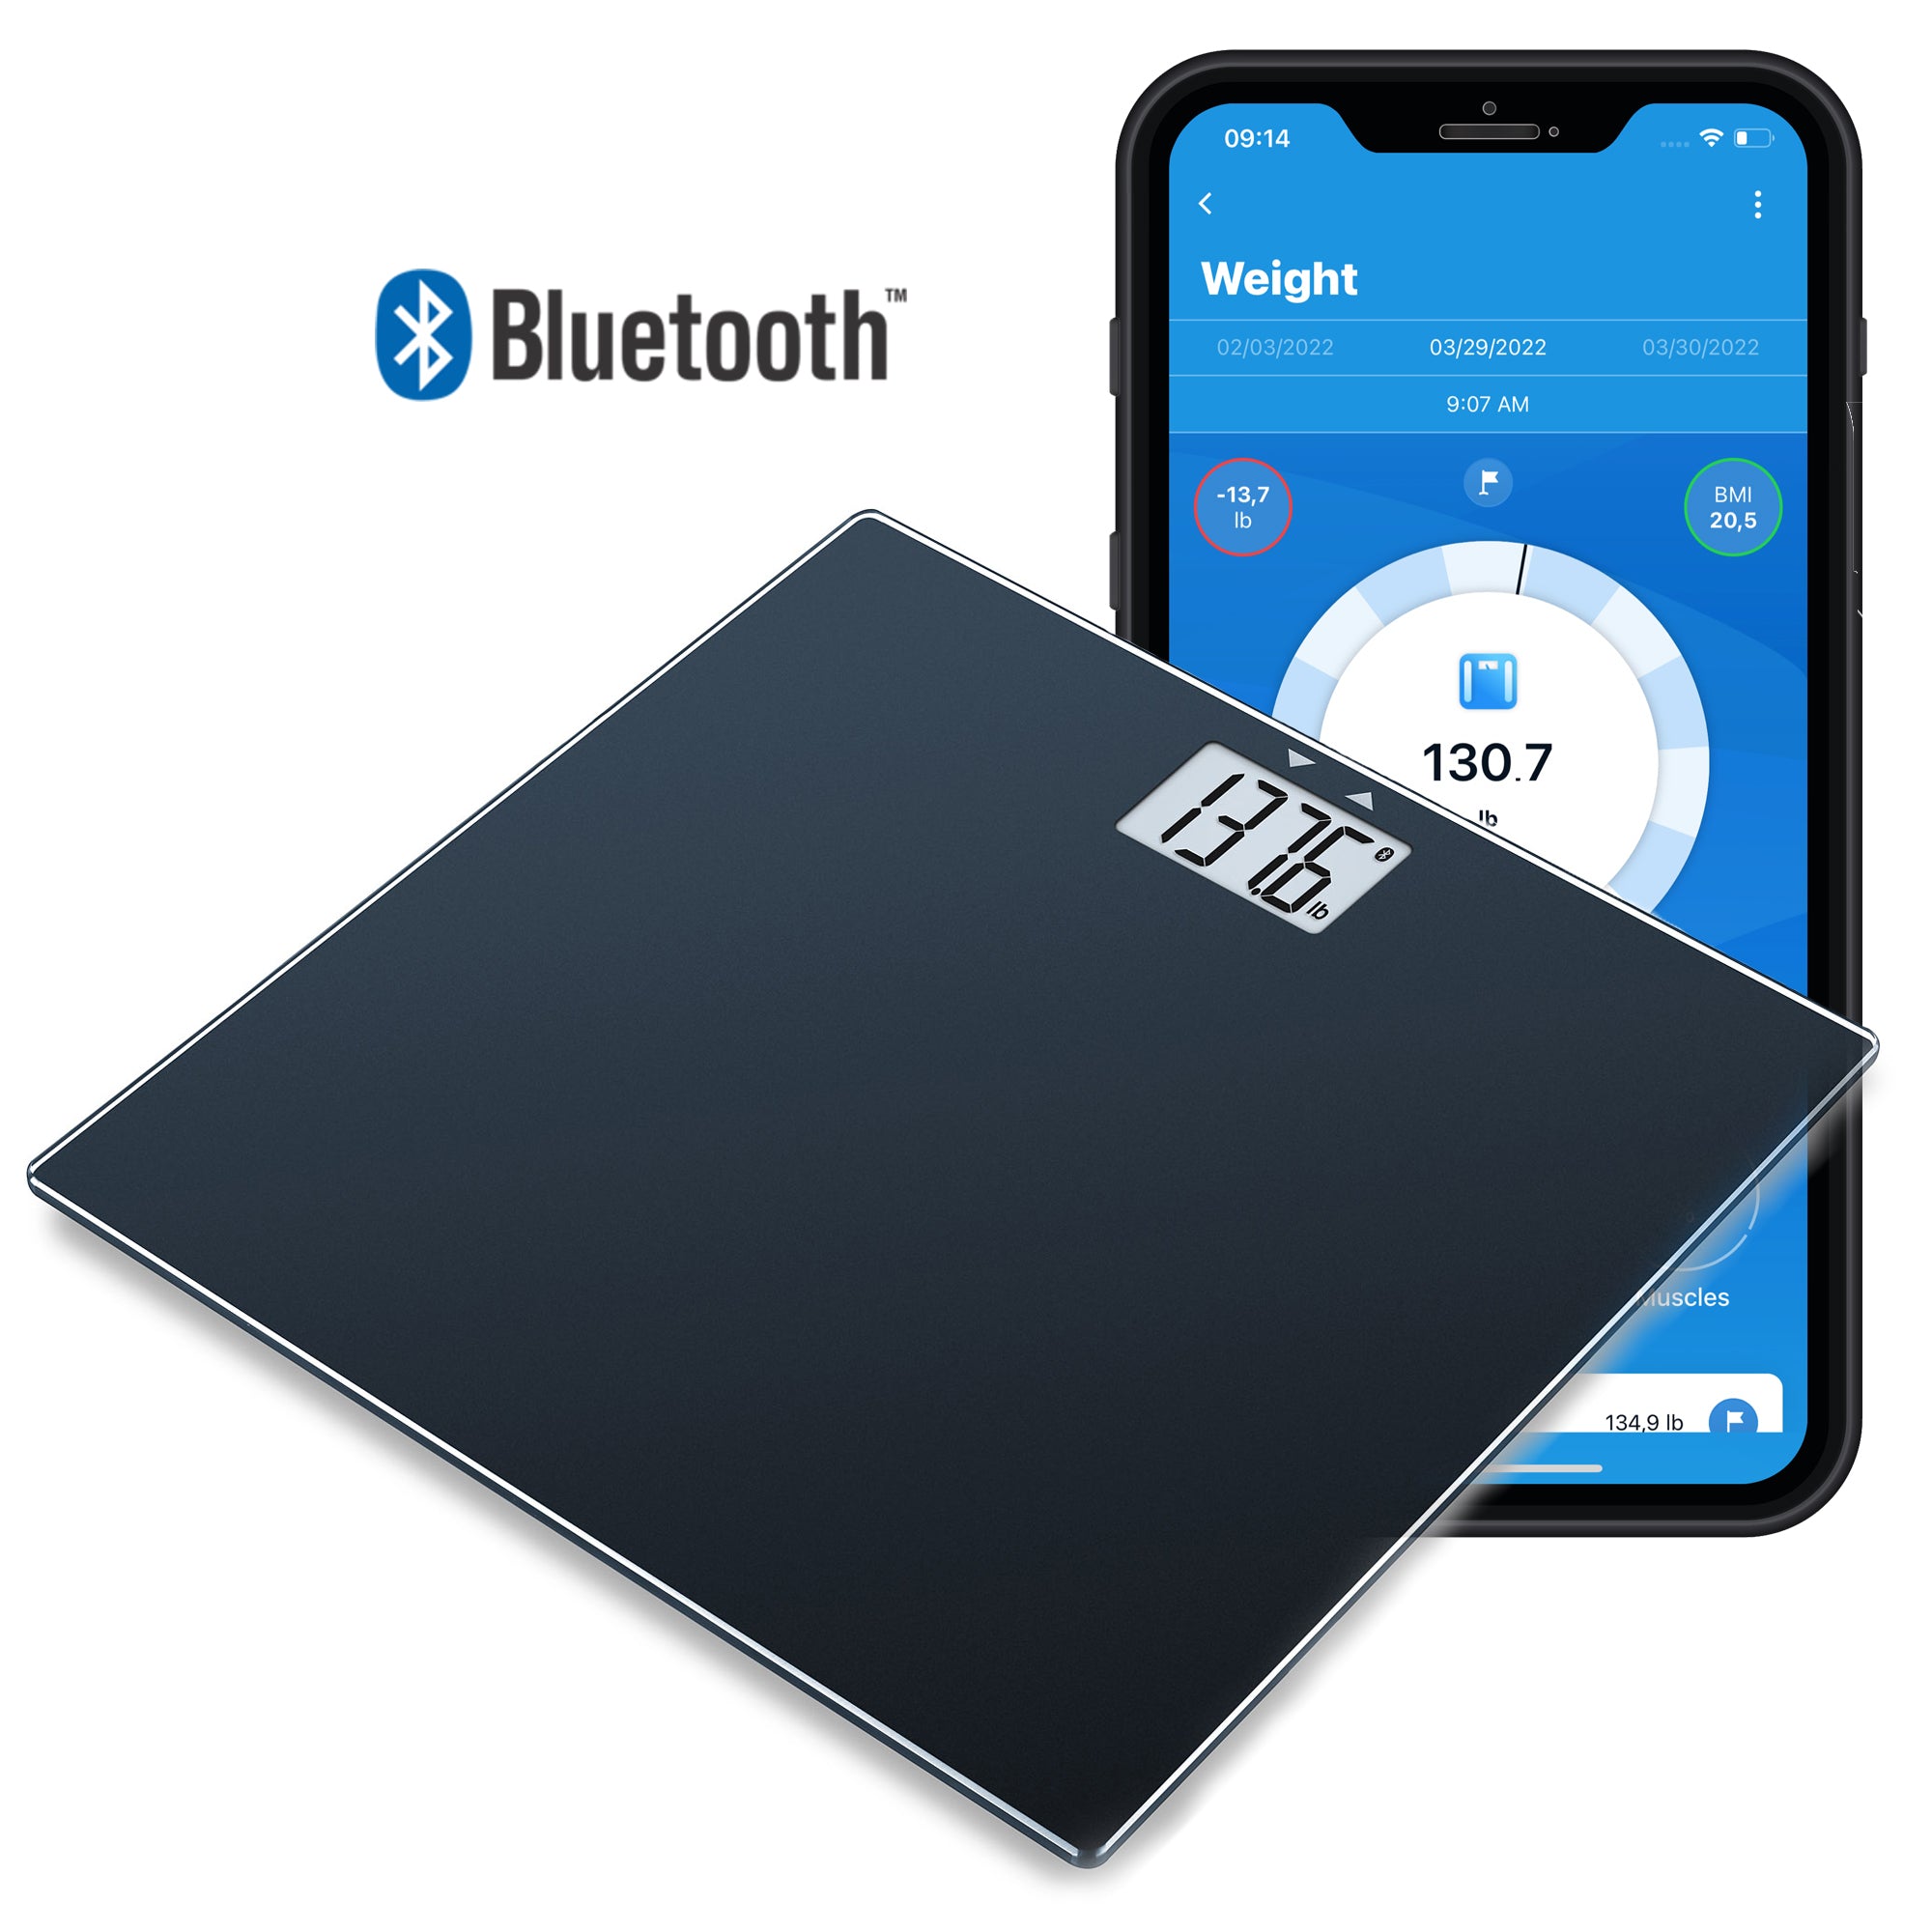 Báscula digital Bluetooth Beurer, GS435B